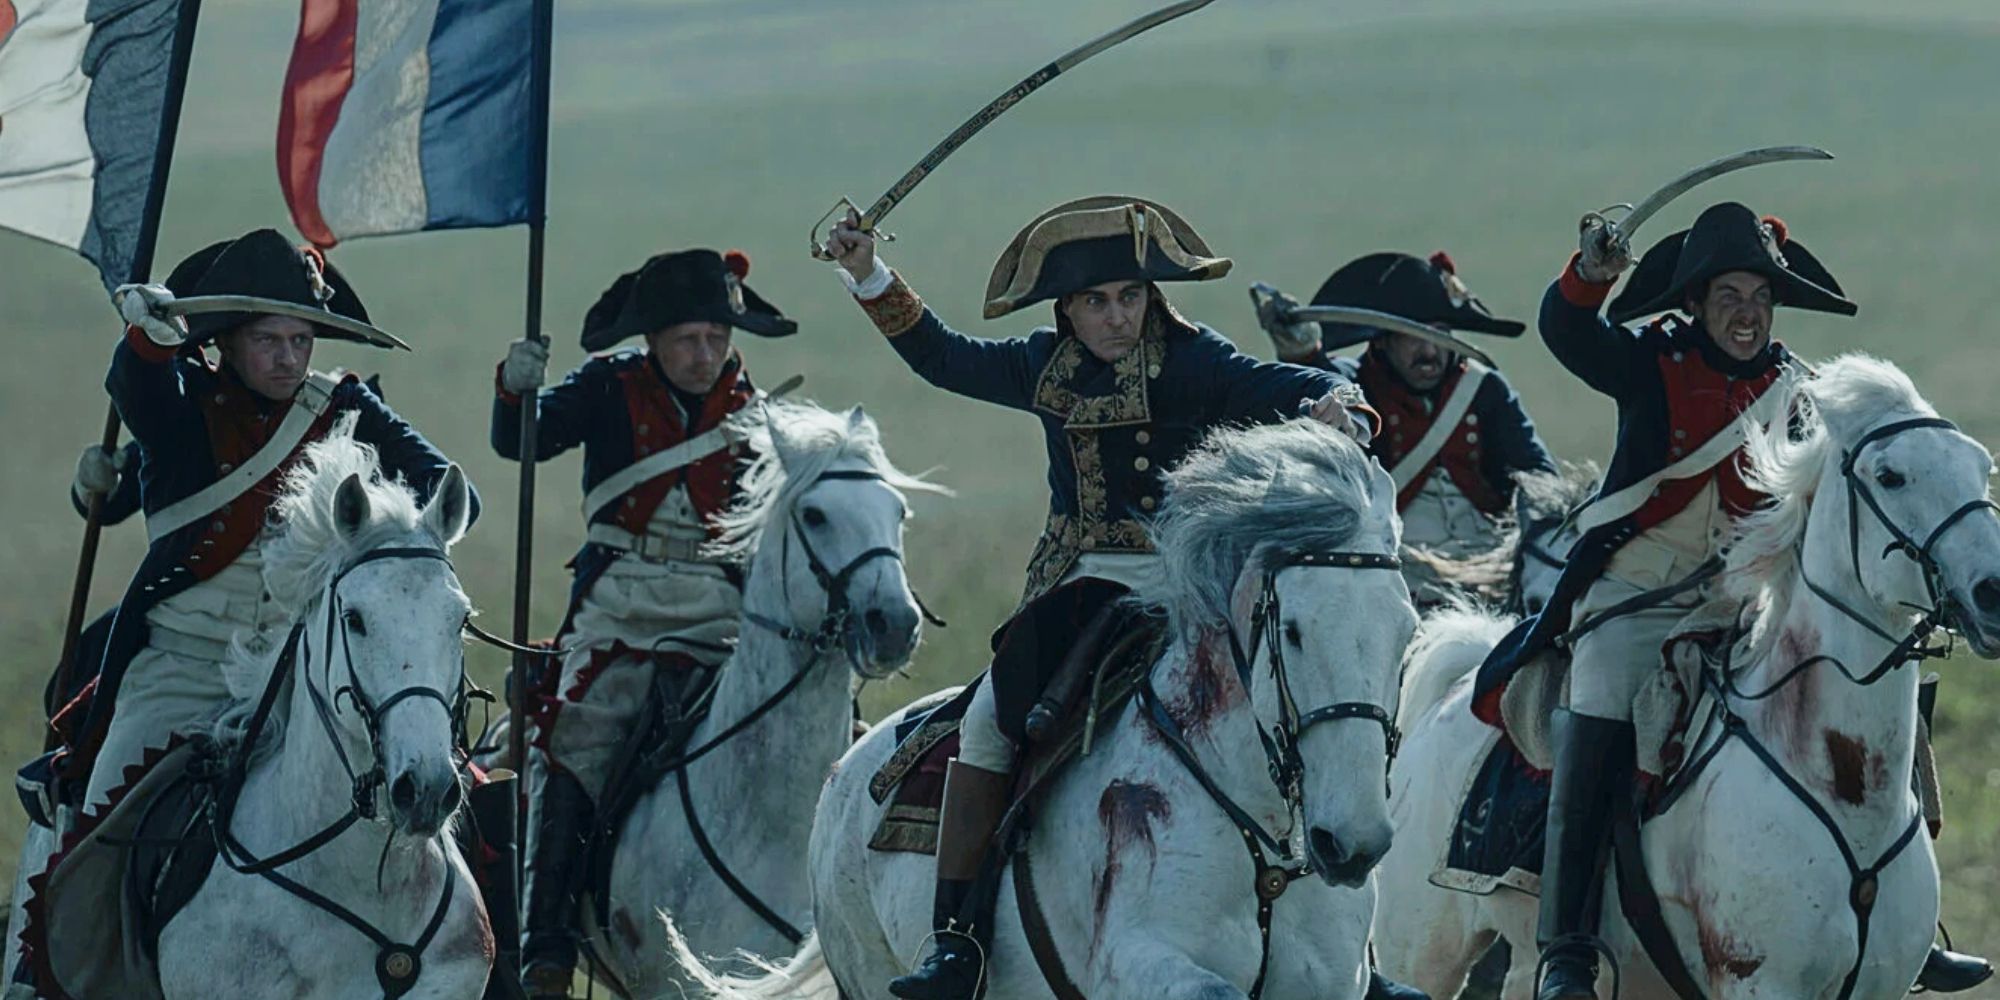 El épico Napoleón de Ridley Scott y Joaquin Phoenix se revela en una imagen lista para la batalla